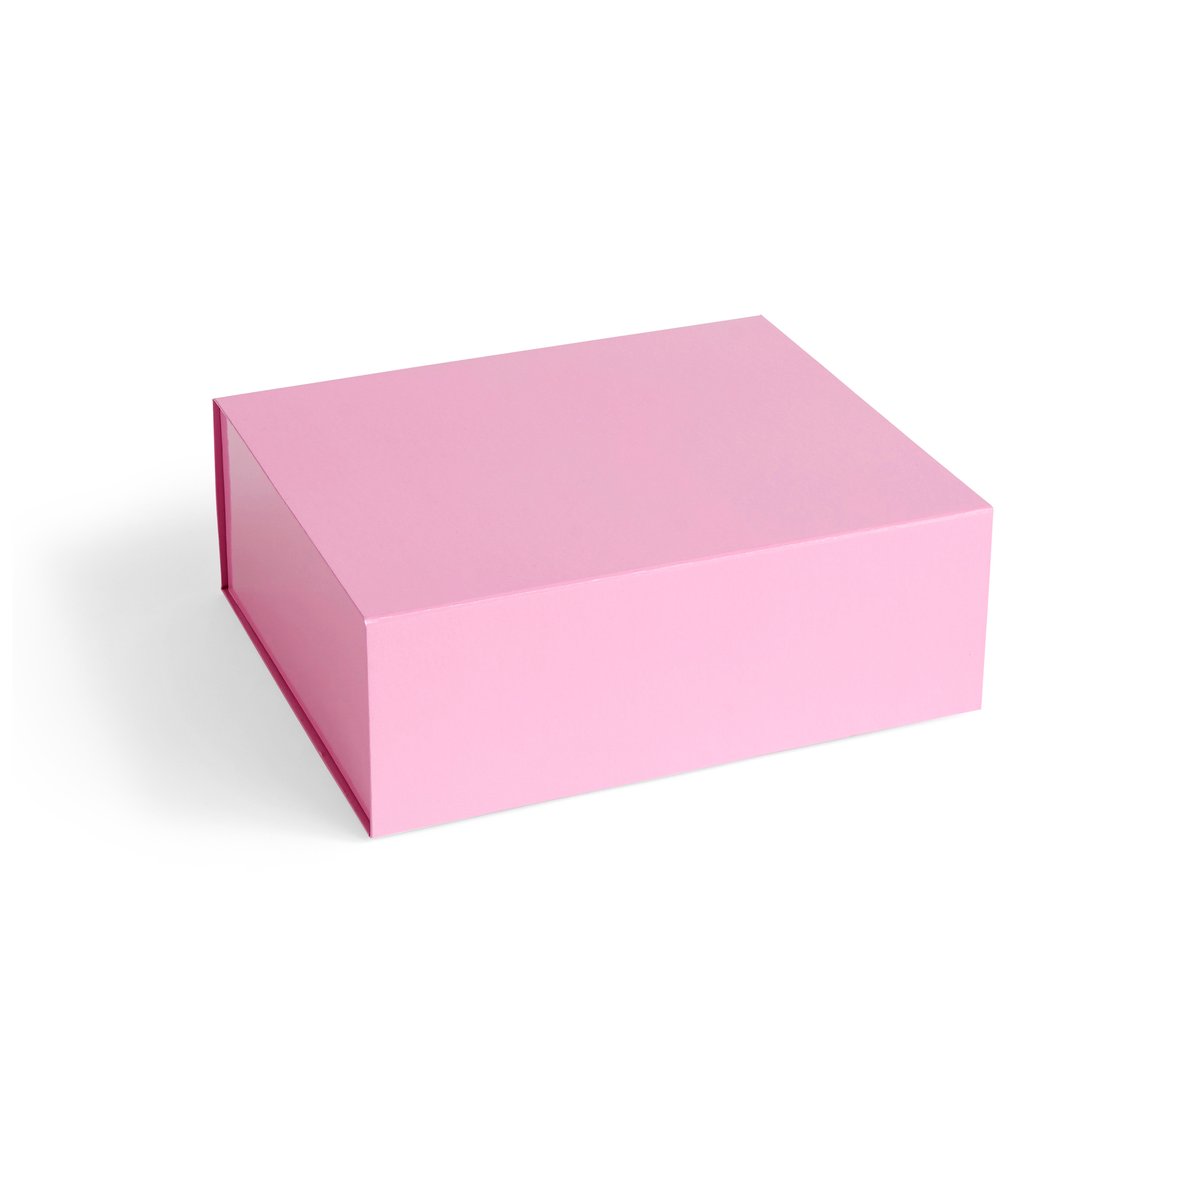 HAY Colour Storage M kannellinen laatikko 29,5×35 cm Light pink